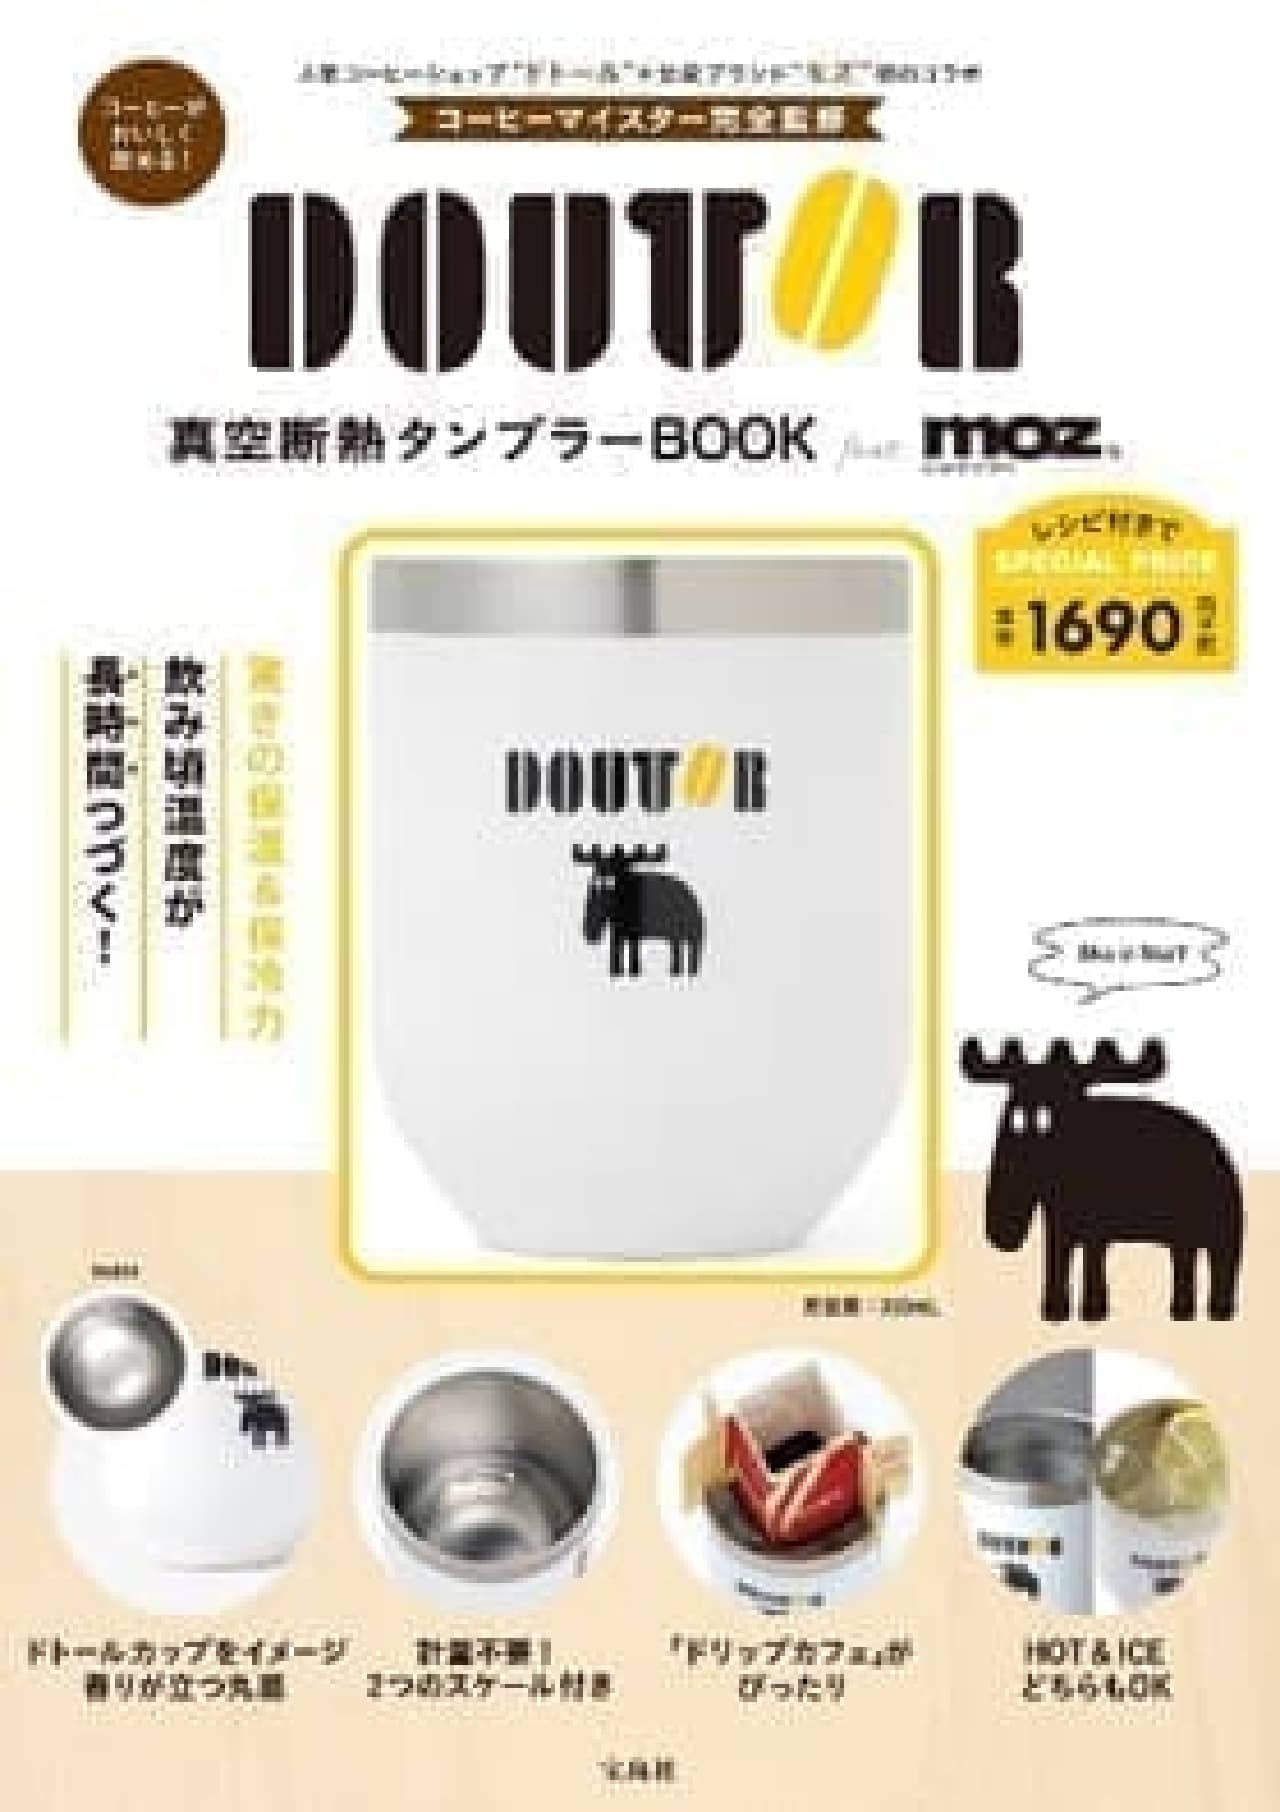 「DOUTOR真空断熱タンブラー BOOK feat.moz」発売 -- ドトール×北欧ブランド「モズ」がコラボ